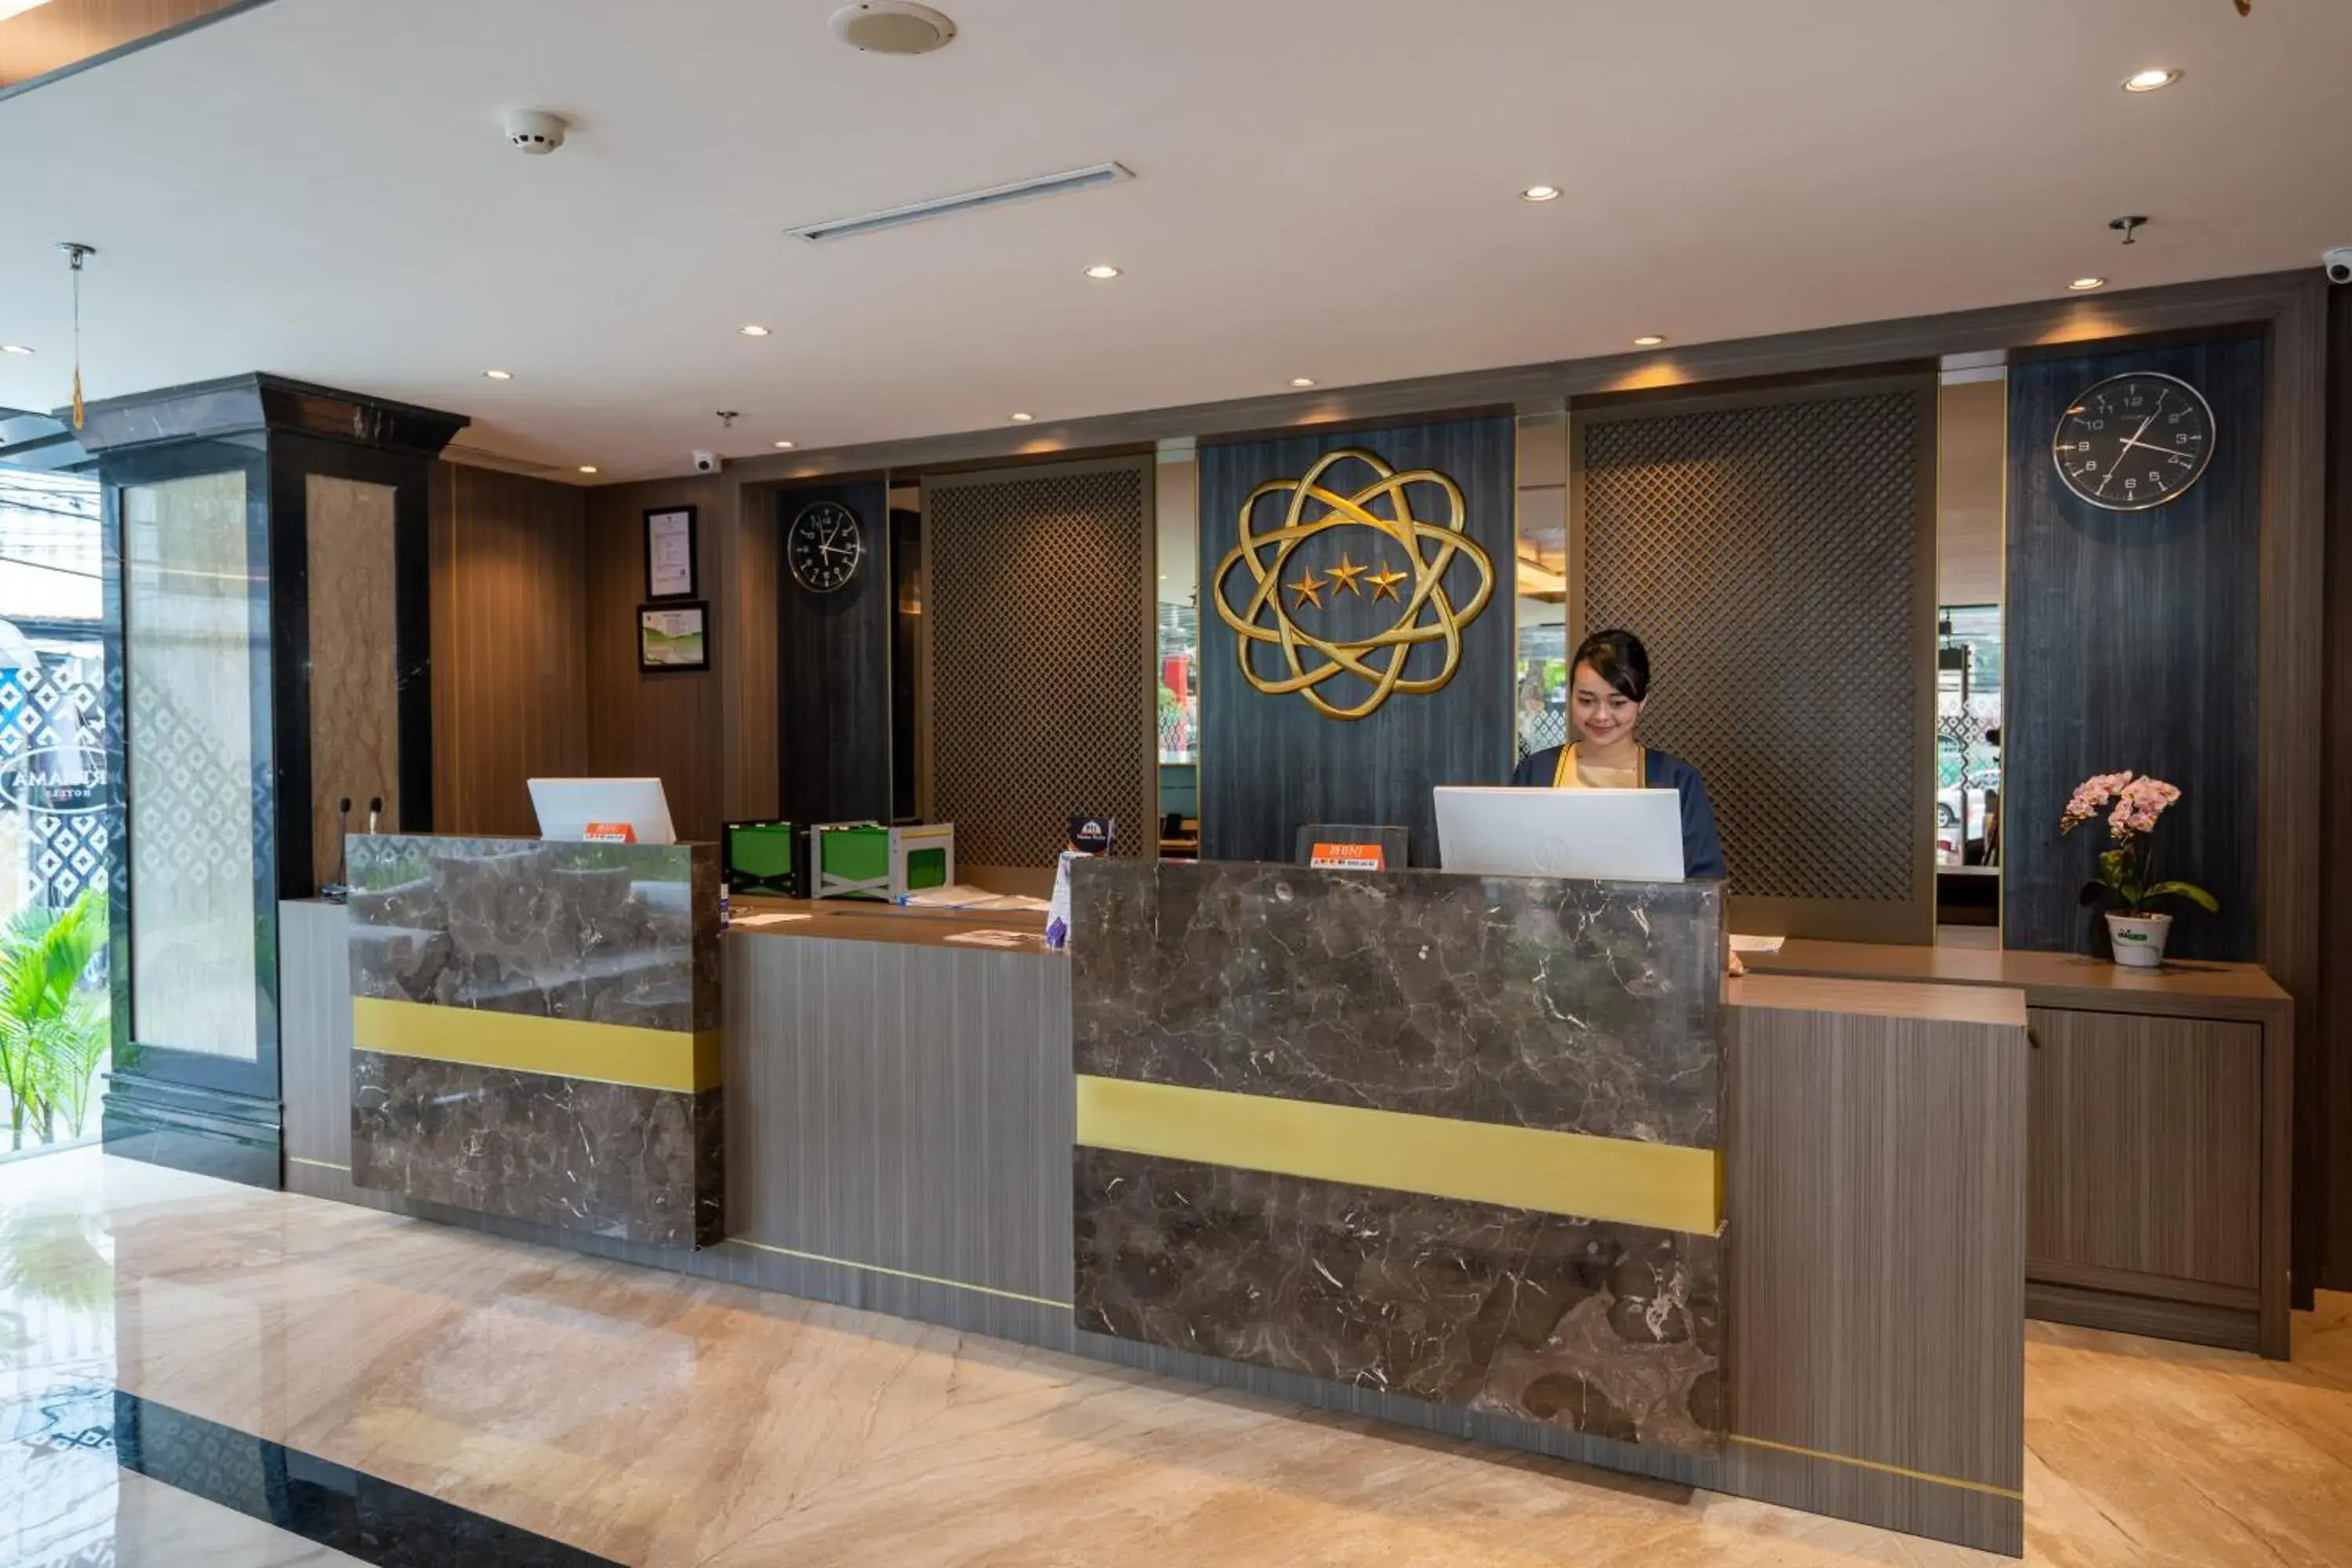 Lobby or reception, Lobby/Reception in Arthama Hotel Wahid Hasyim Jakarta